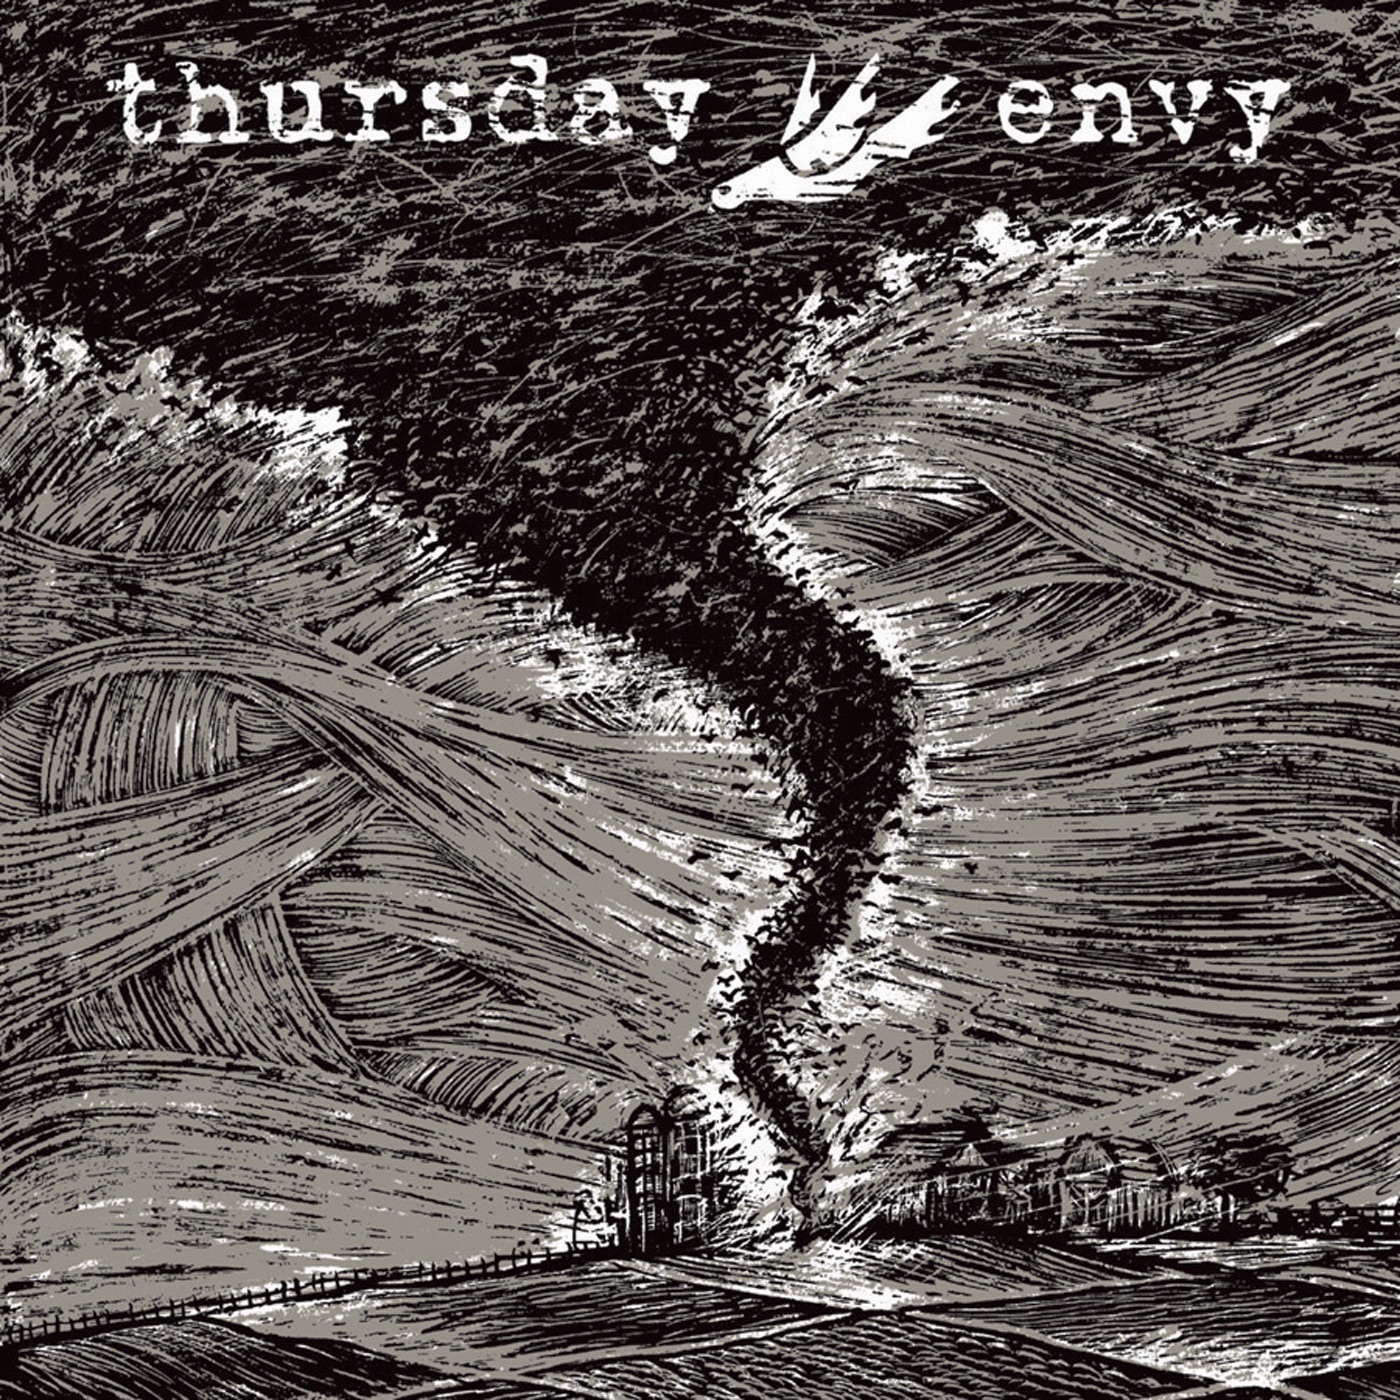 Split: Thursday / Envy by Thursday / Envy